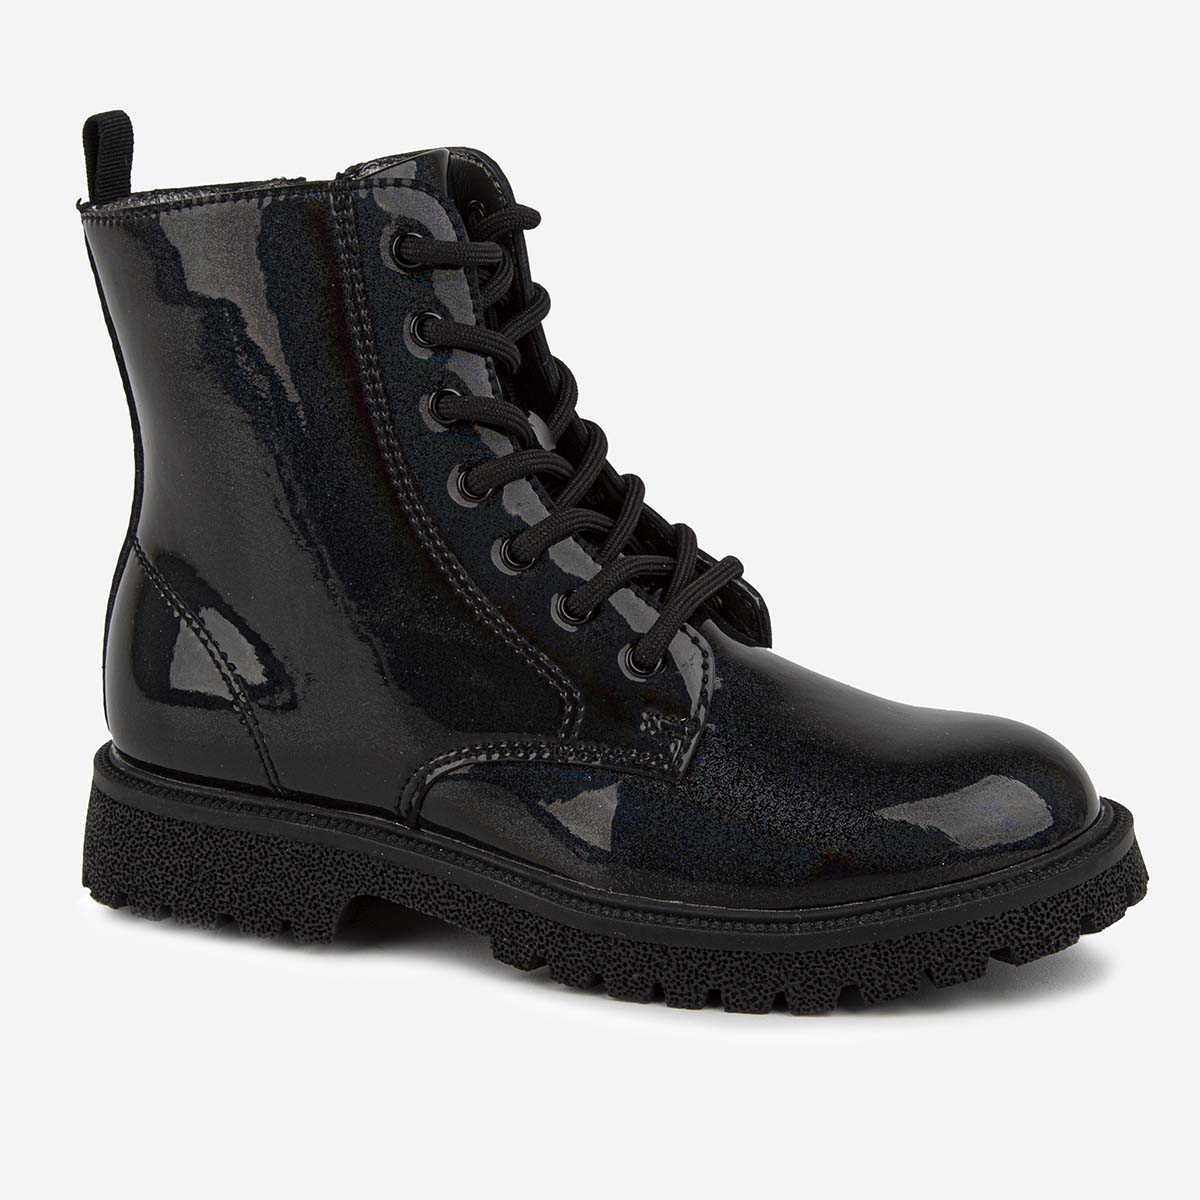 Ботинки Kapika 52556ук, цвет черный, размер 32